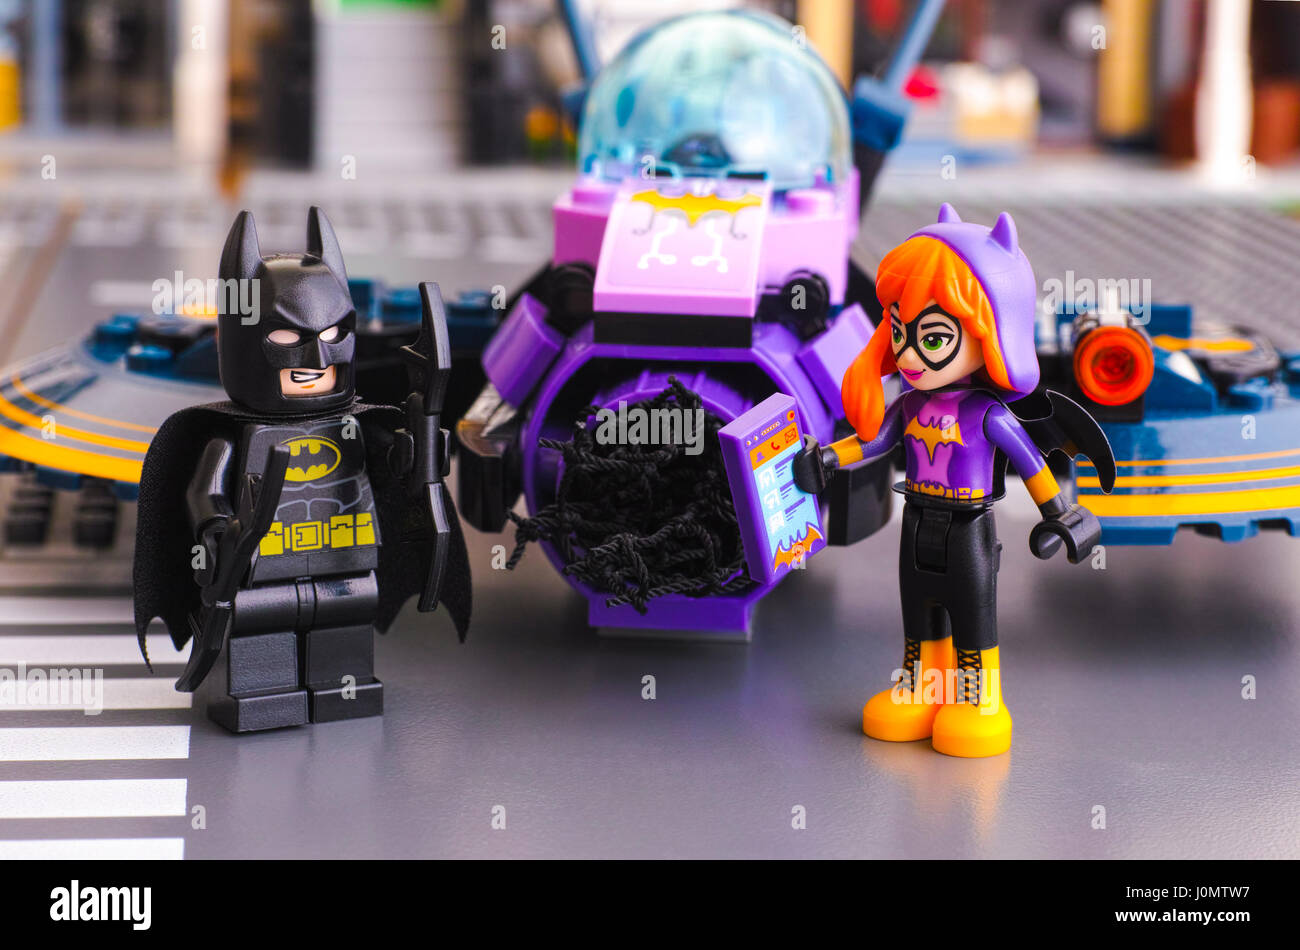 Tambov, Fédération de Russie - Mars 04, 2017 Super Héros DC Lego filles monde. Playmobil - 5116 - Moto de Batman et Batgirl batarangs avec mini-poupée figure avec mobile Banque D'Images